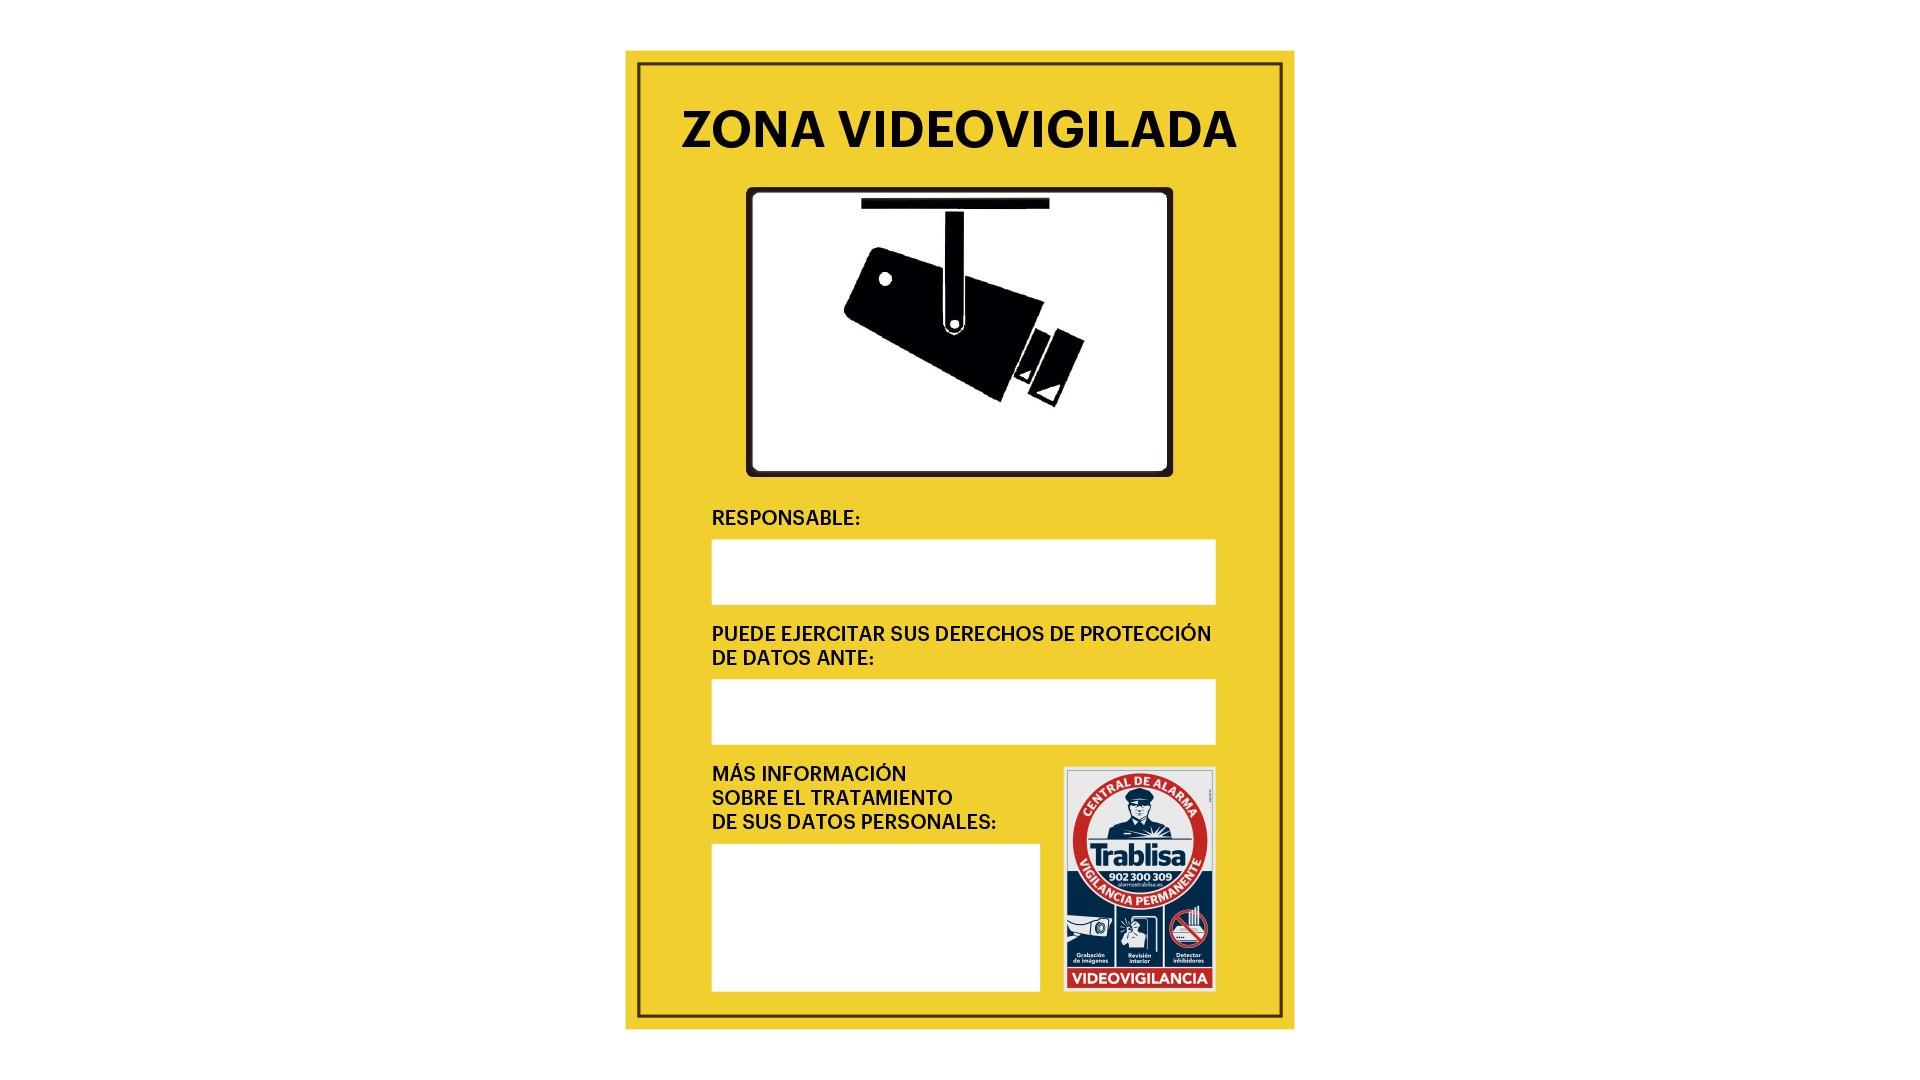 Zona videovigilada es una señal especial con el texto en color negro